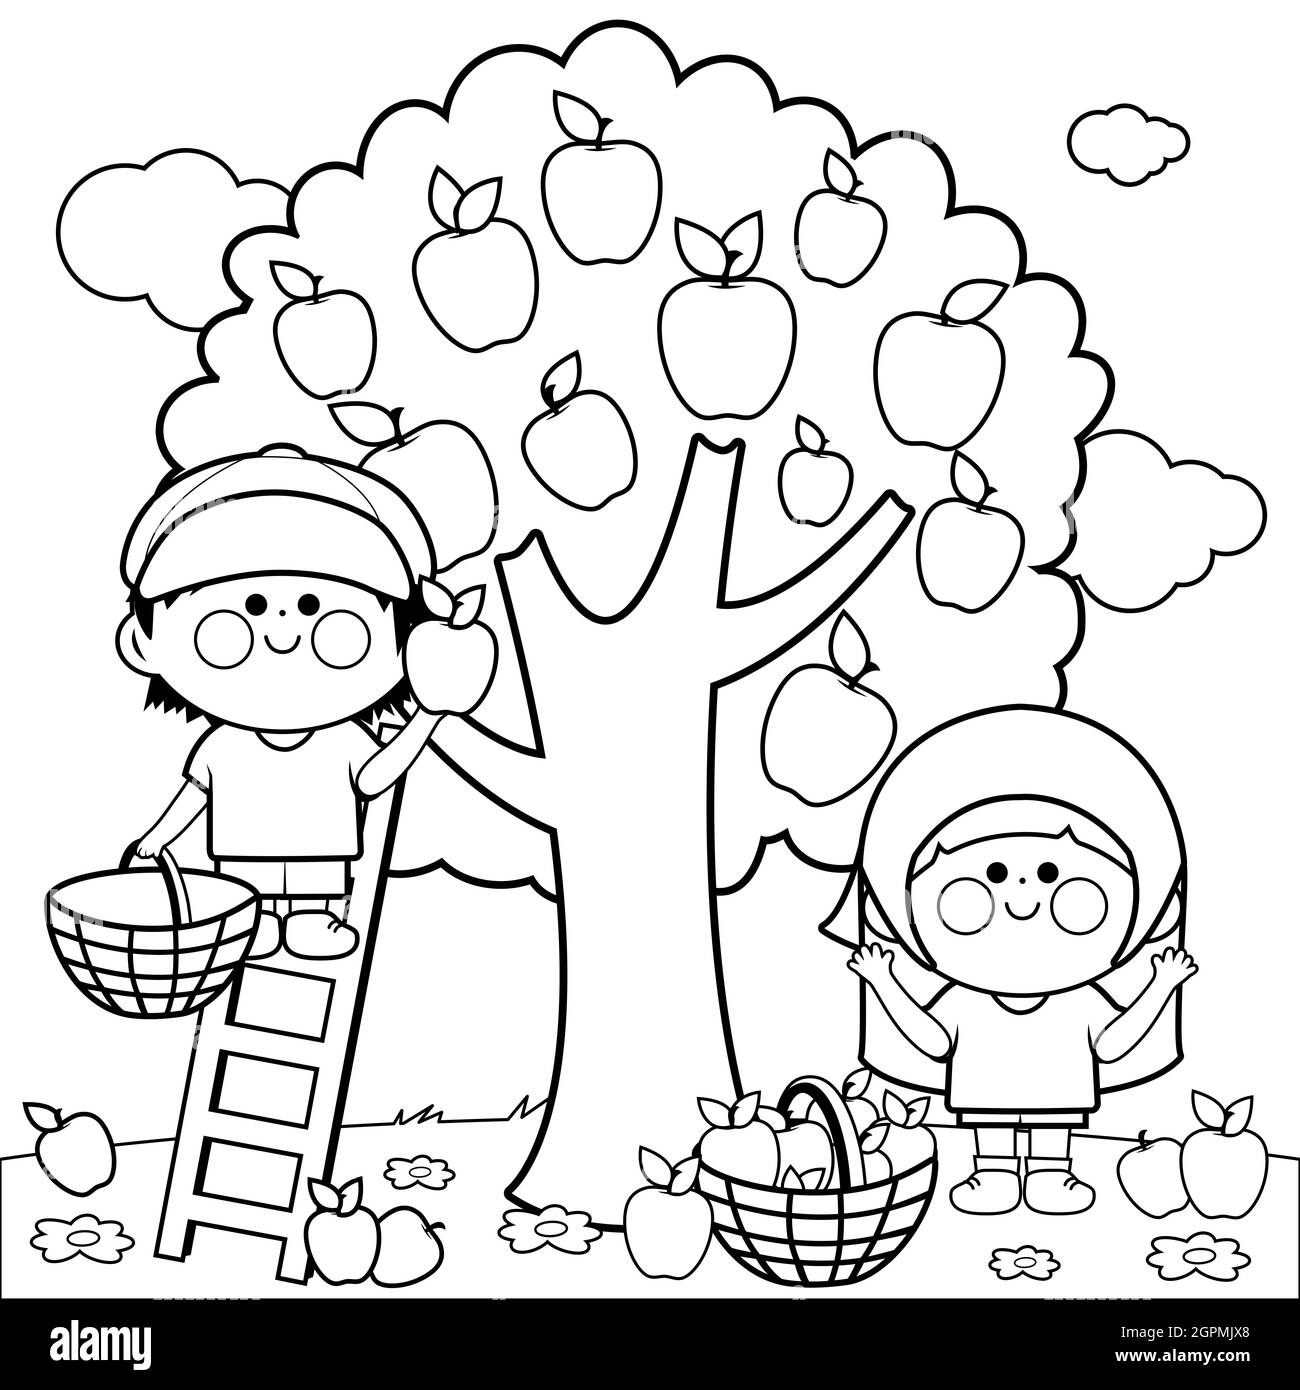 Deux enfants, un garçon et une fille cueillant des pommes sous un pommier. Garçon est sur une échelle de cueillette des pommes. Page de couleur noir et blanc. Banque D'Images